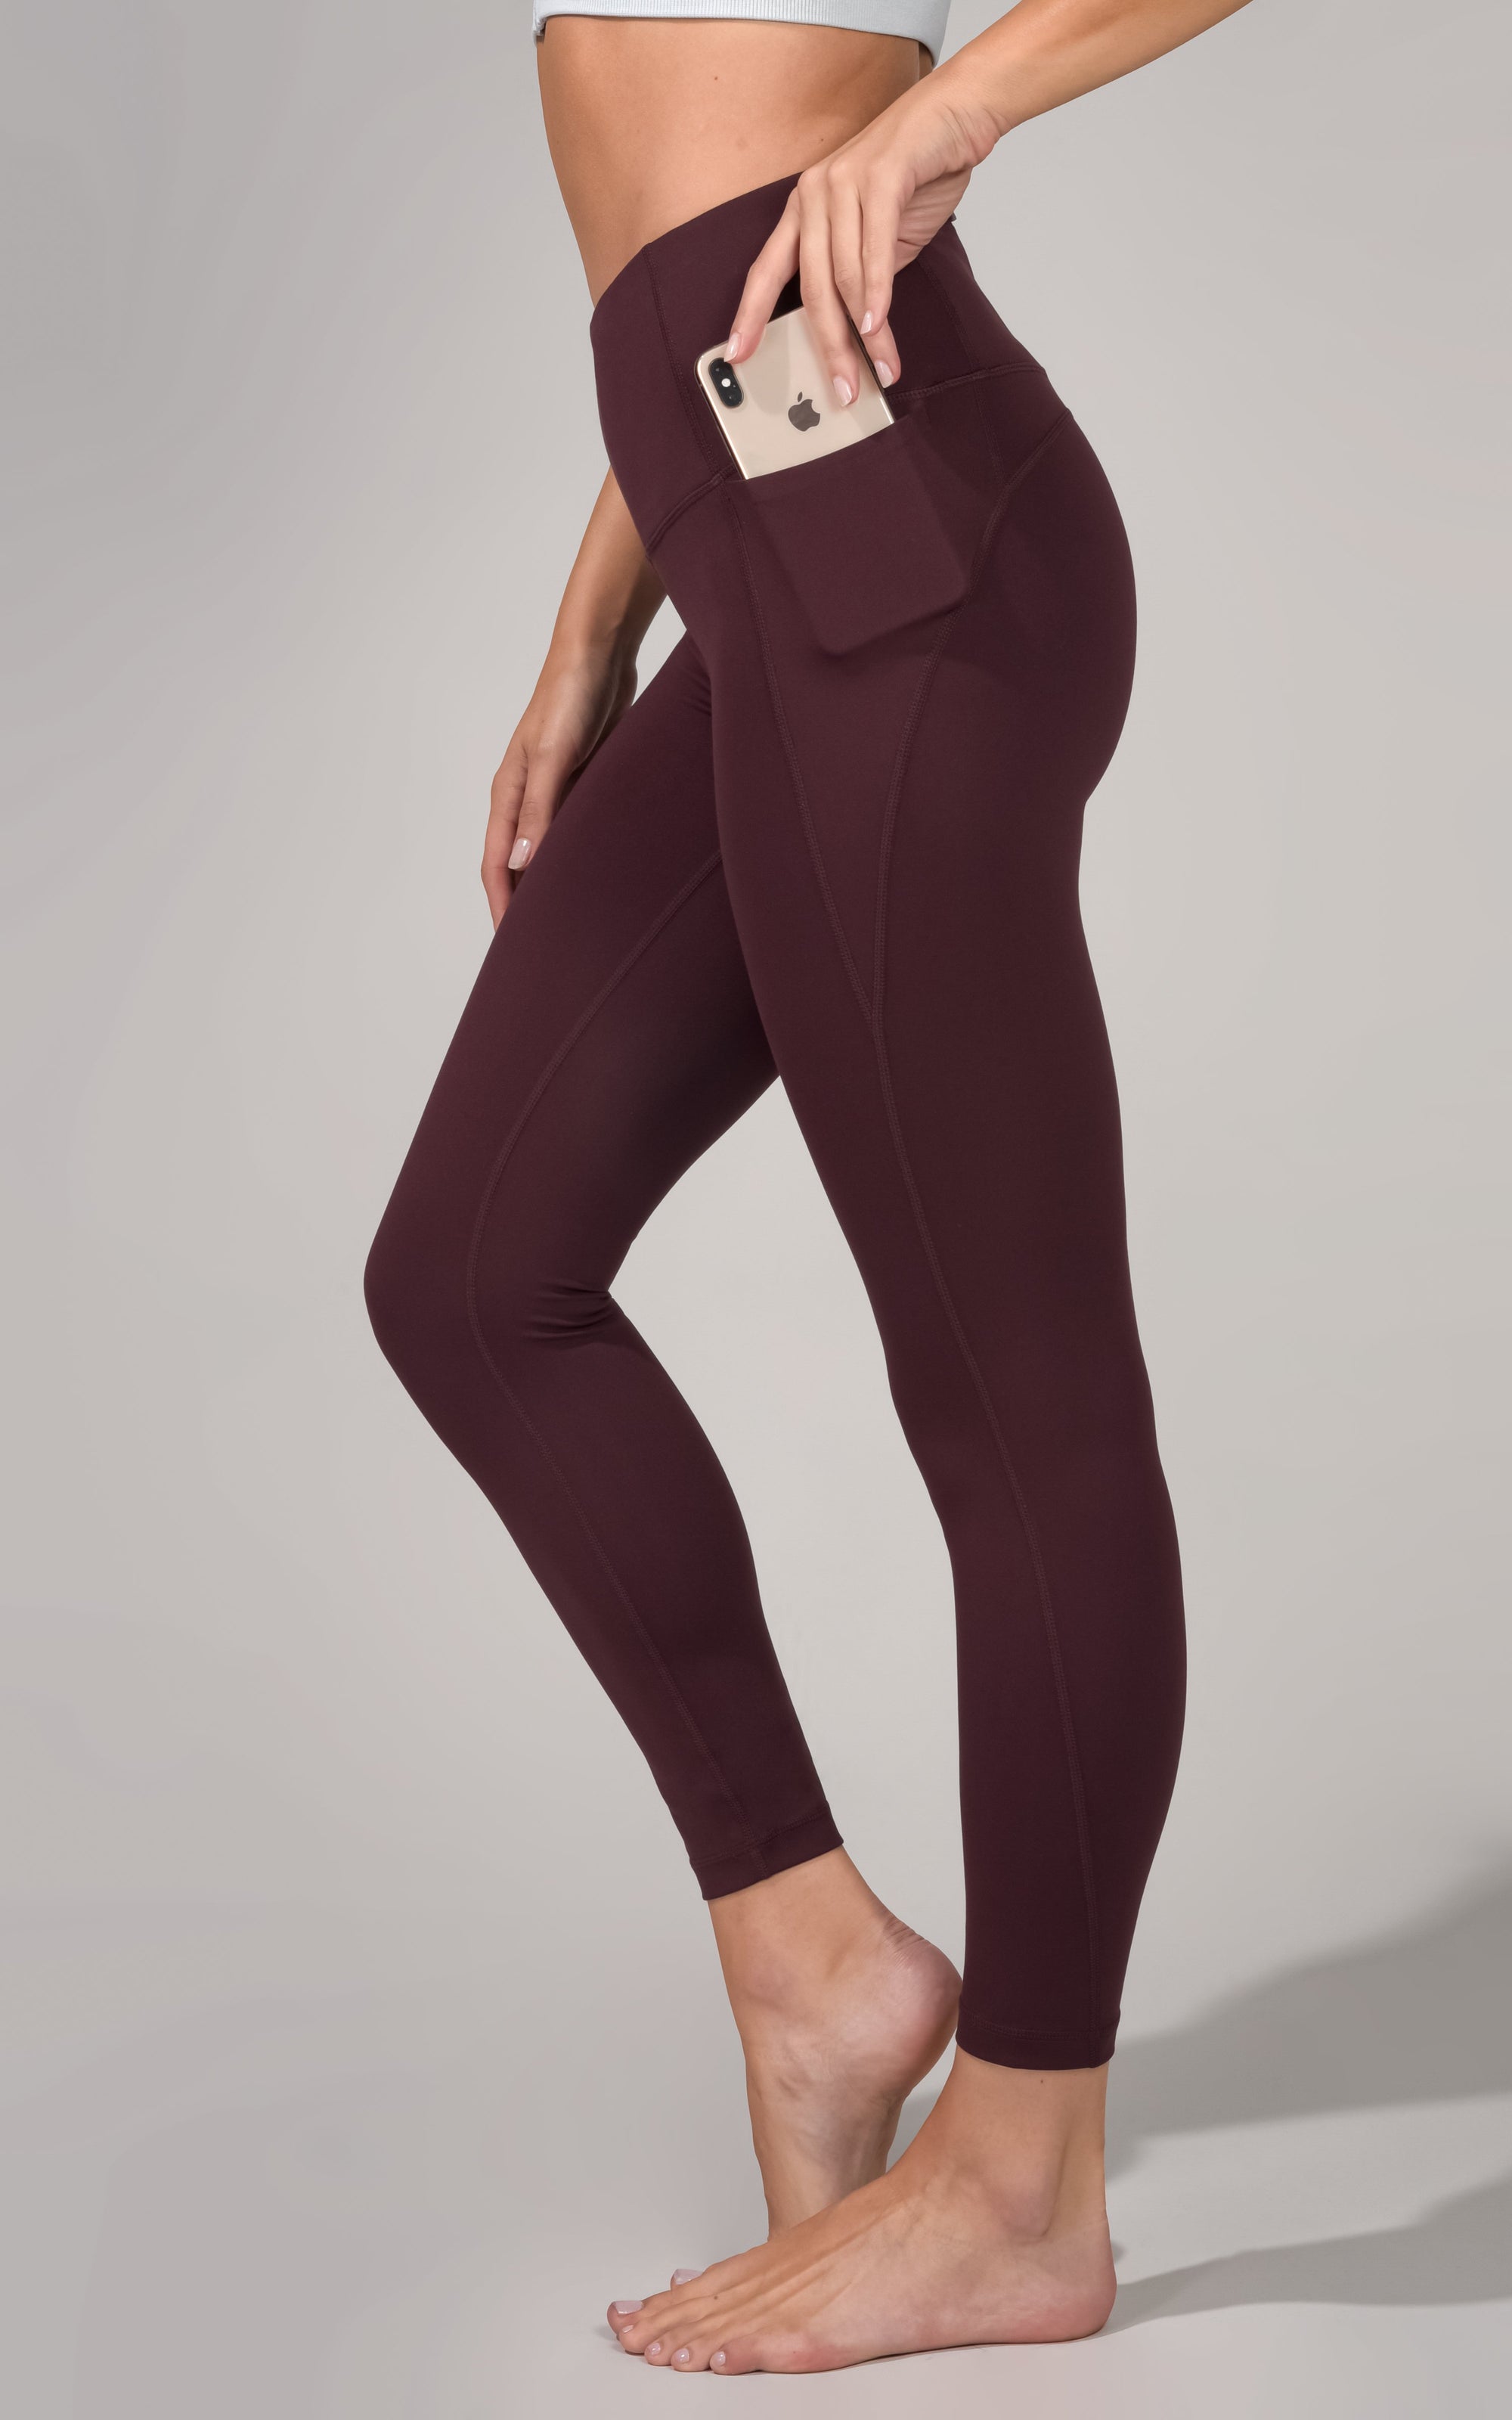 High-Waisted Garment-Dyed Side-Pocket 7/8-Length Leggings For Women